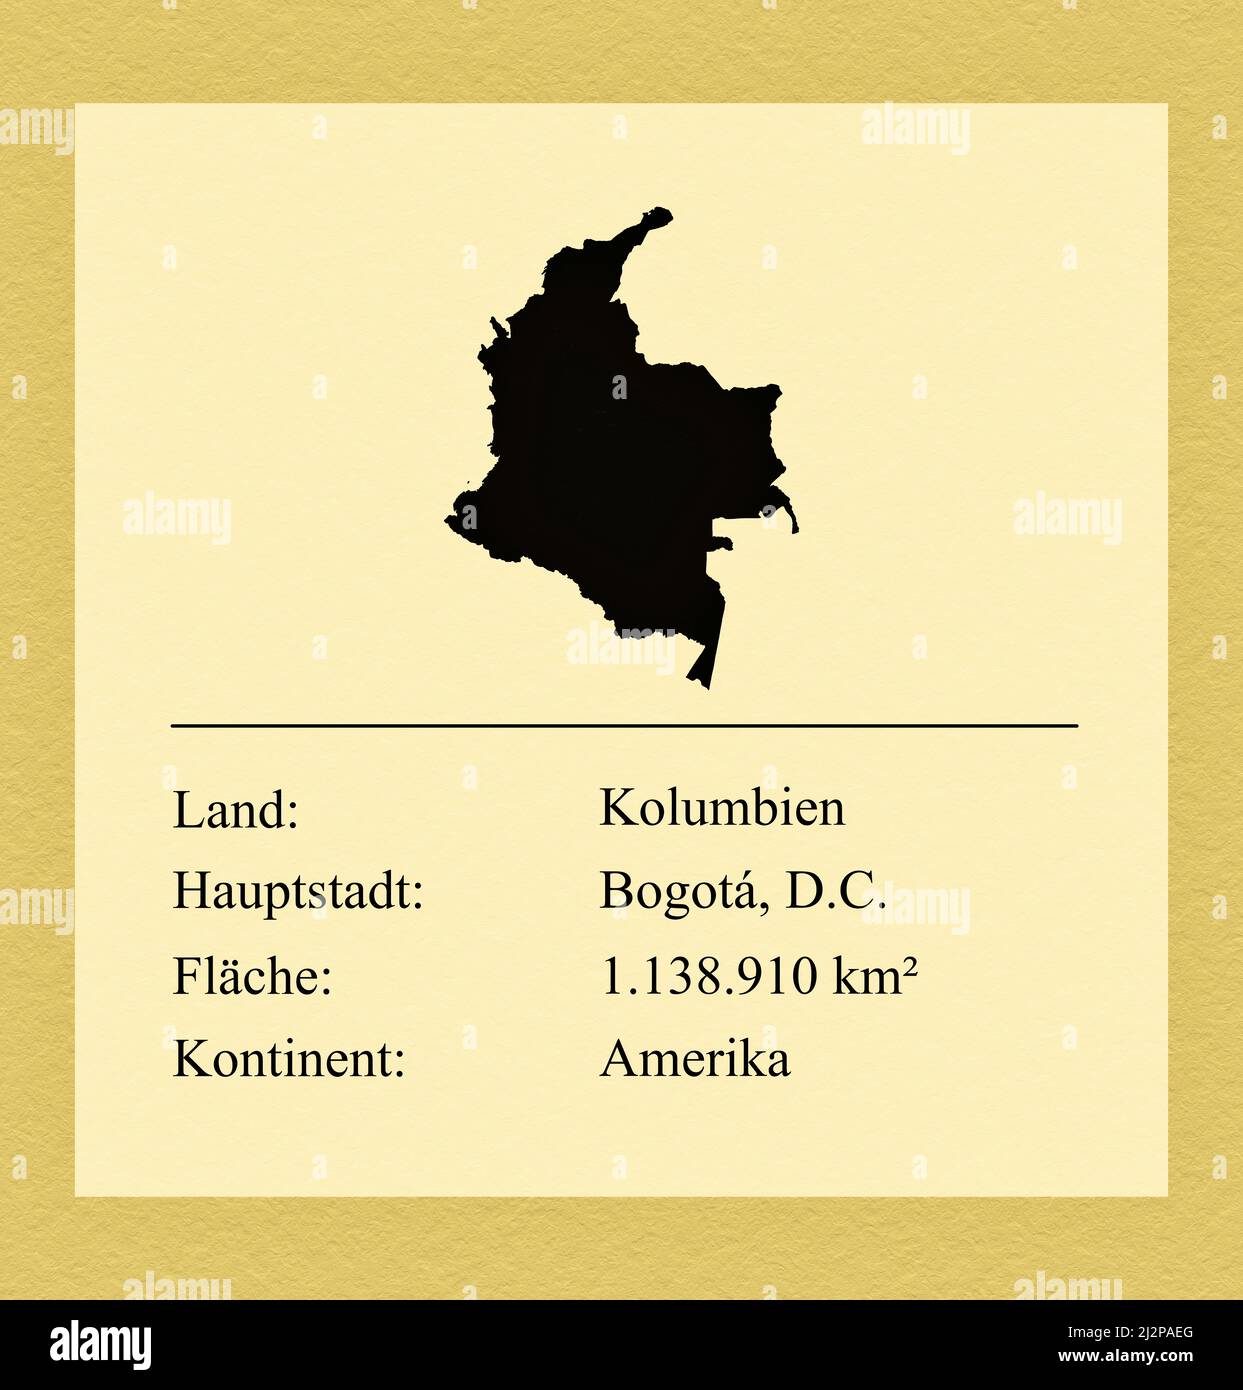 Umrisse des Landes Kolumbien, darunter ein kleiner Steckbrief mit Ländernamen, Hauptstadt, Fläche und Kontinent Foto Stock